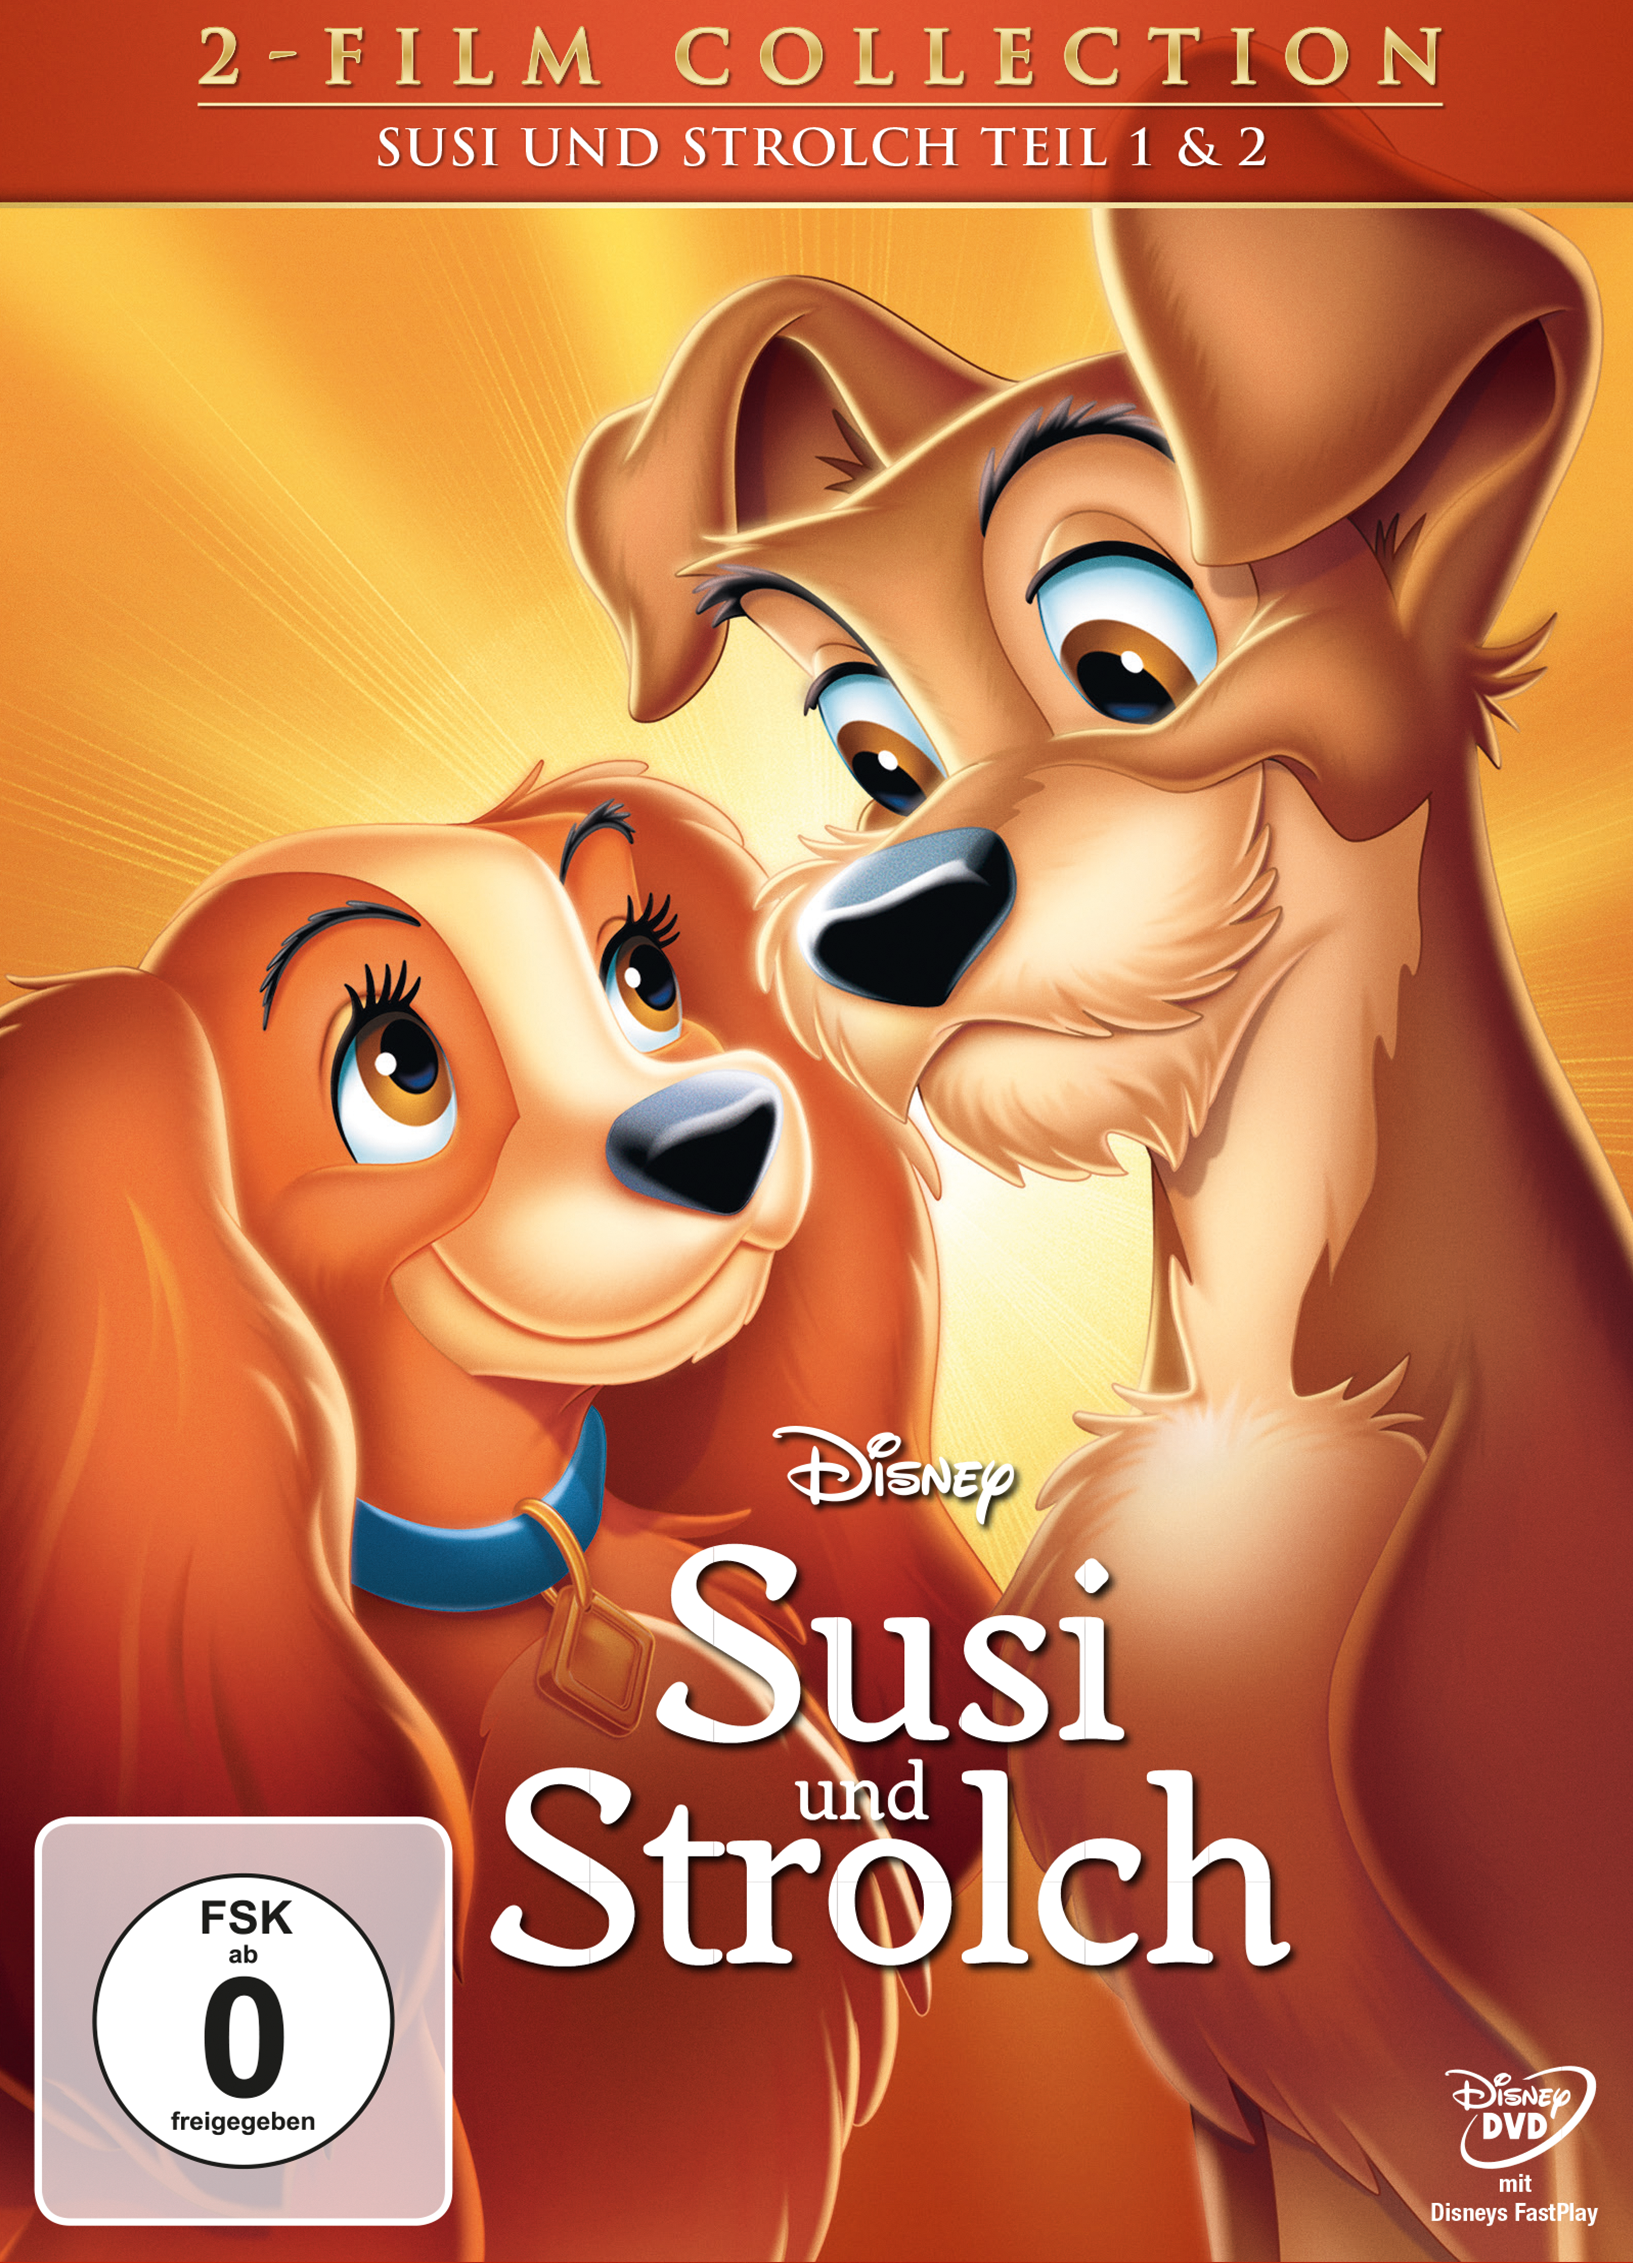 und Diamond II + und Strolch Susi DVD Strolch Edition - Susi